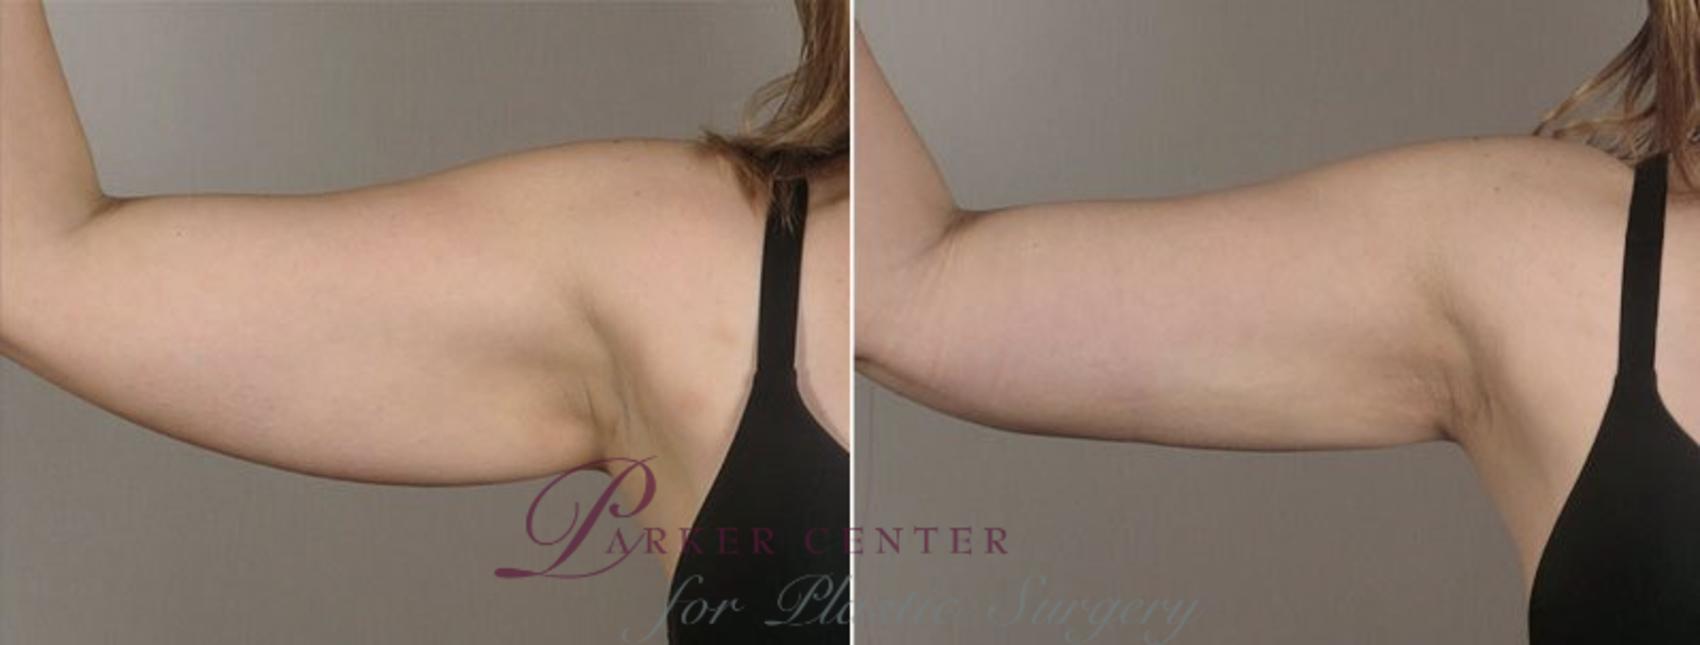 Upper Arm Rejuvenation Case 803 Before & After View #1 | Paramus, NJ | Parker Center for Plastic Surgery